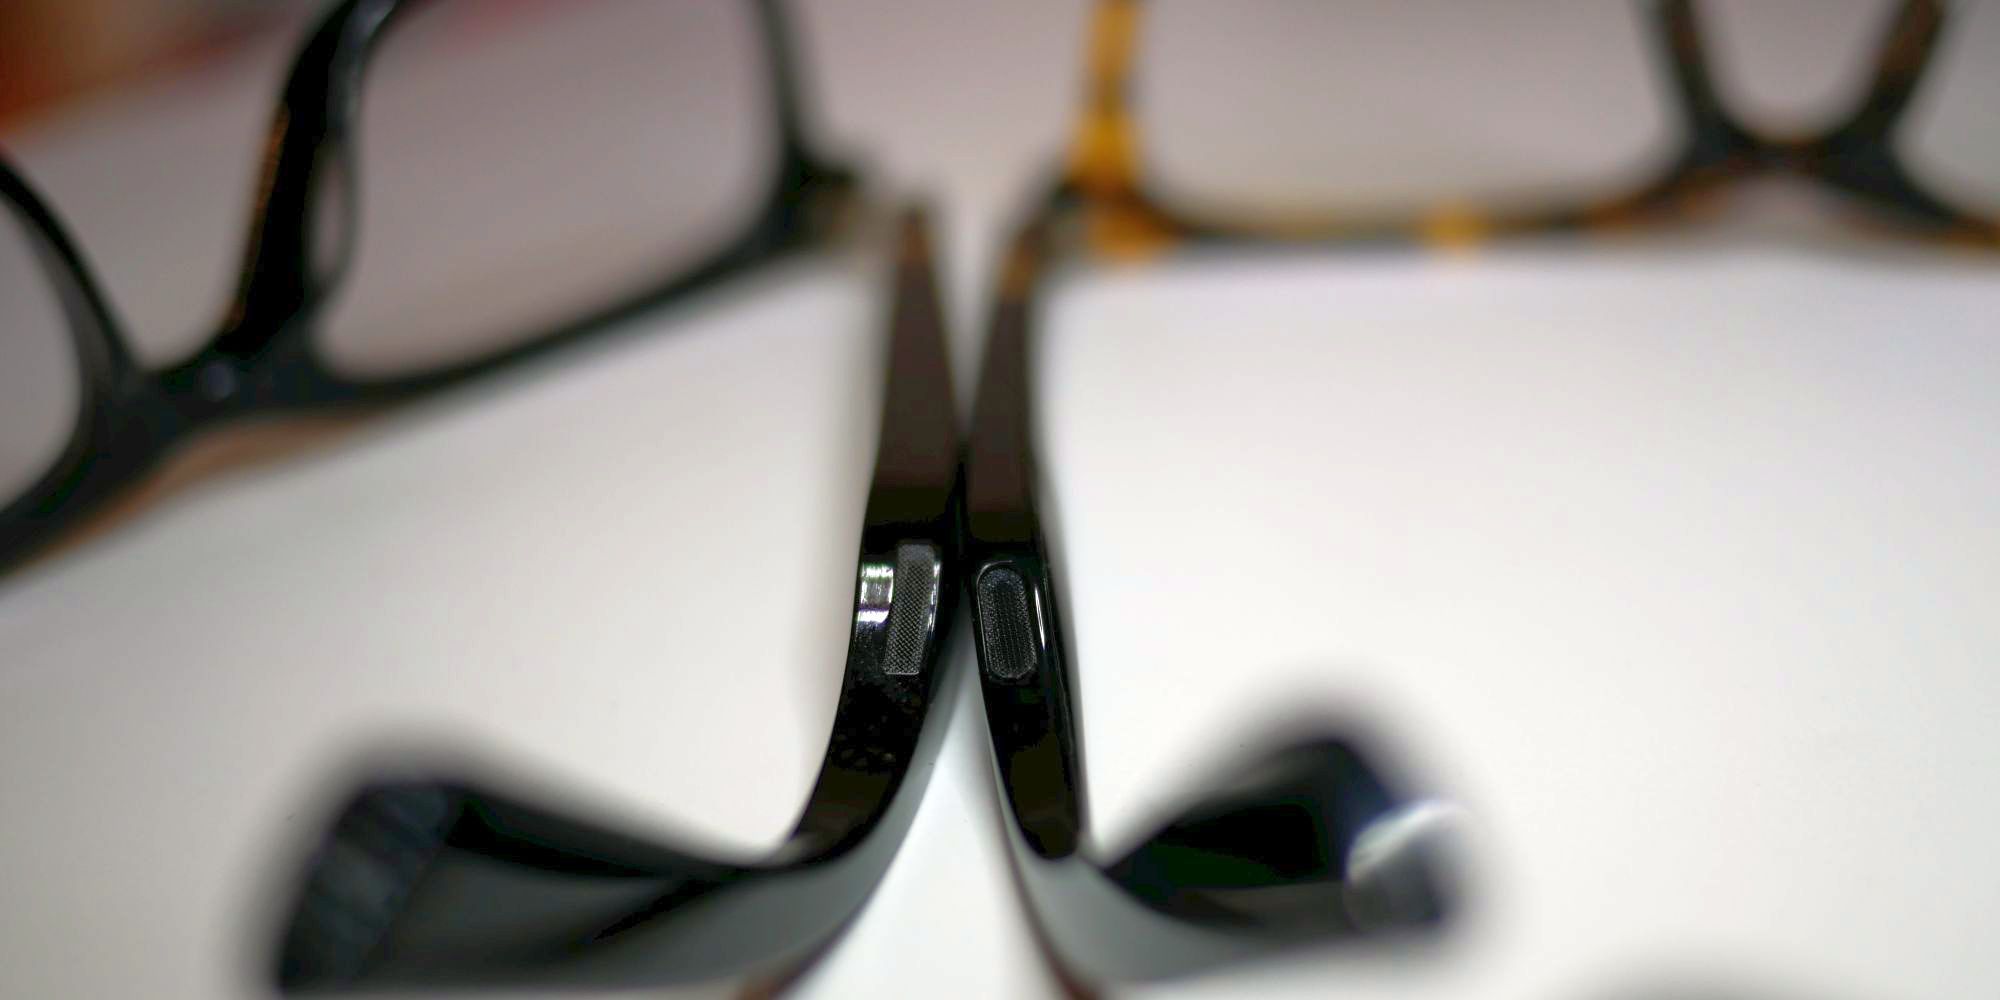 Vue-Lite-2-Glasses-07-1